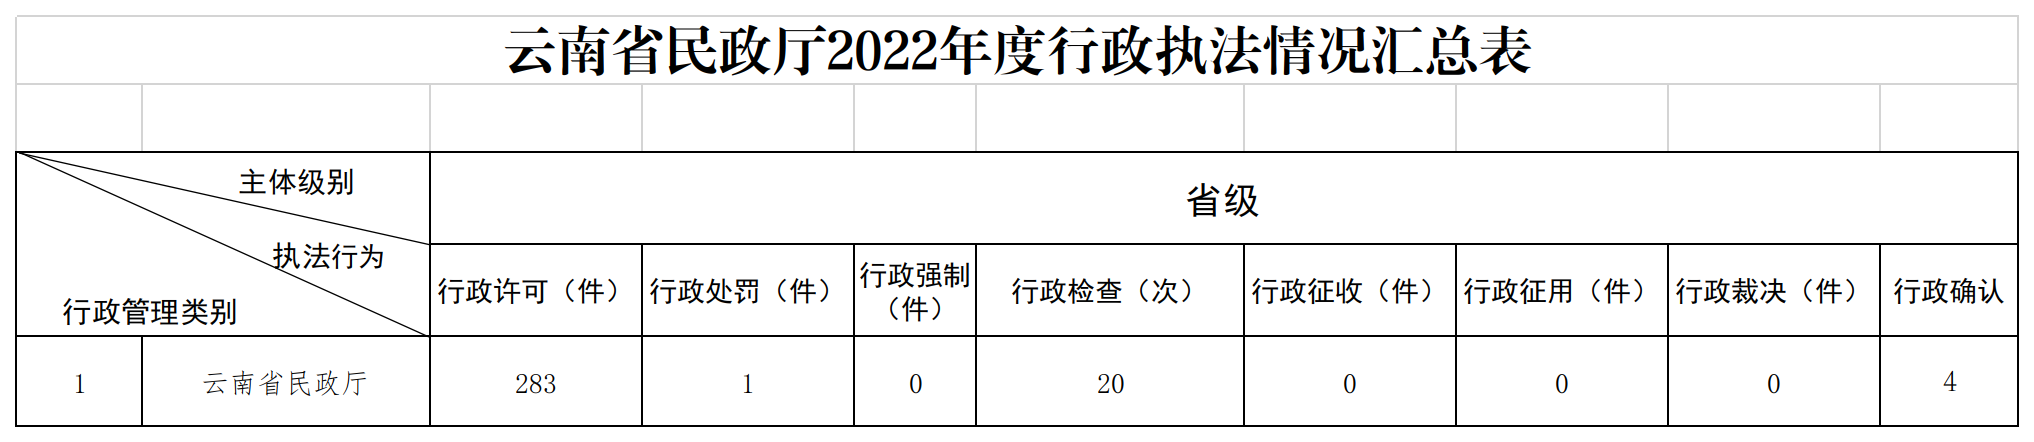 2022年度行政执法情况汇总表（公开版）.png